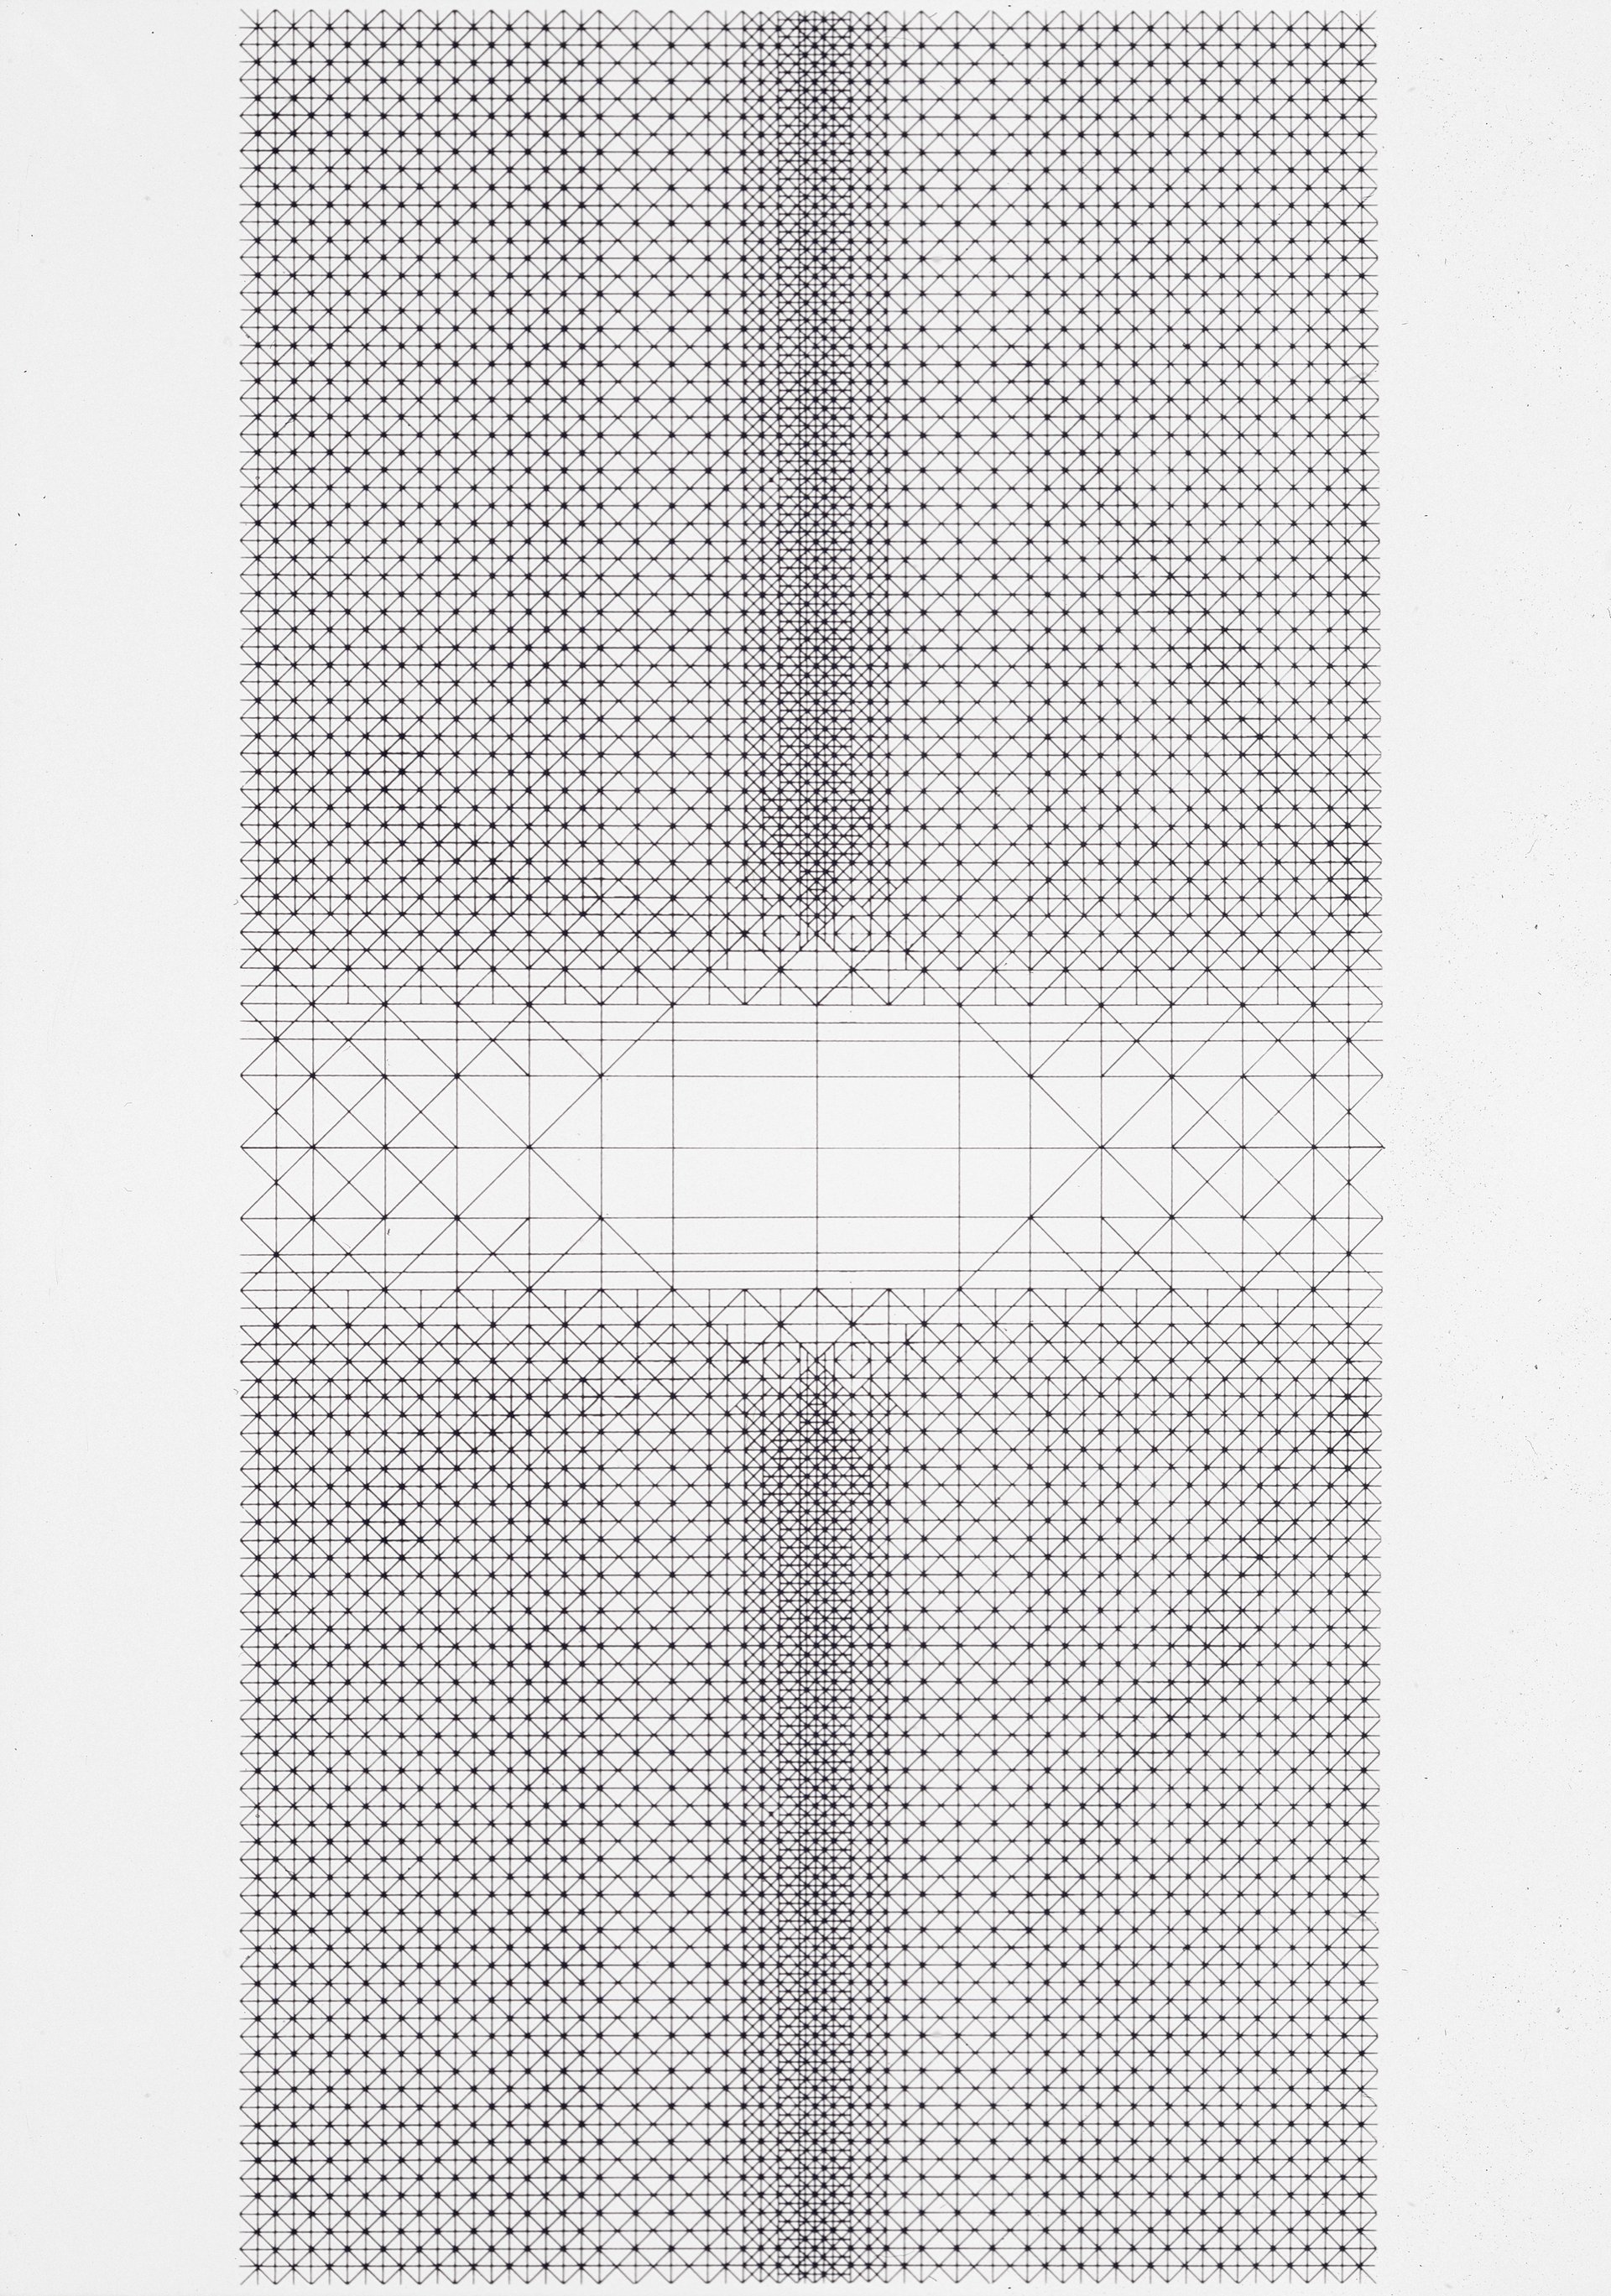 lev nusberg, &quot;kreuz&quot; (1962), silkscreen on laid paper, 84 x 60 cm